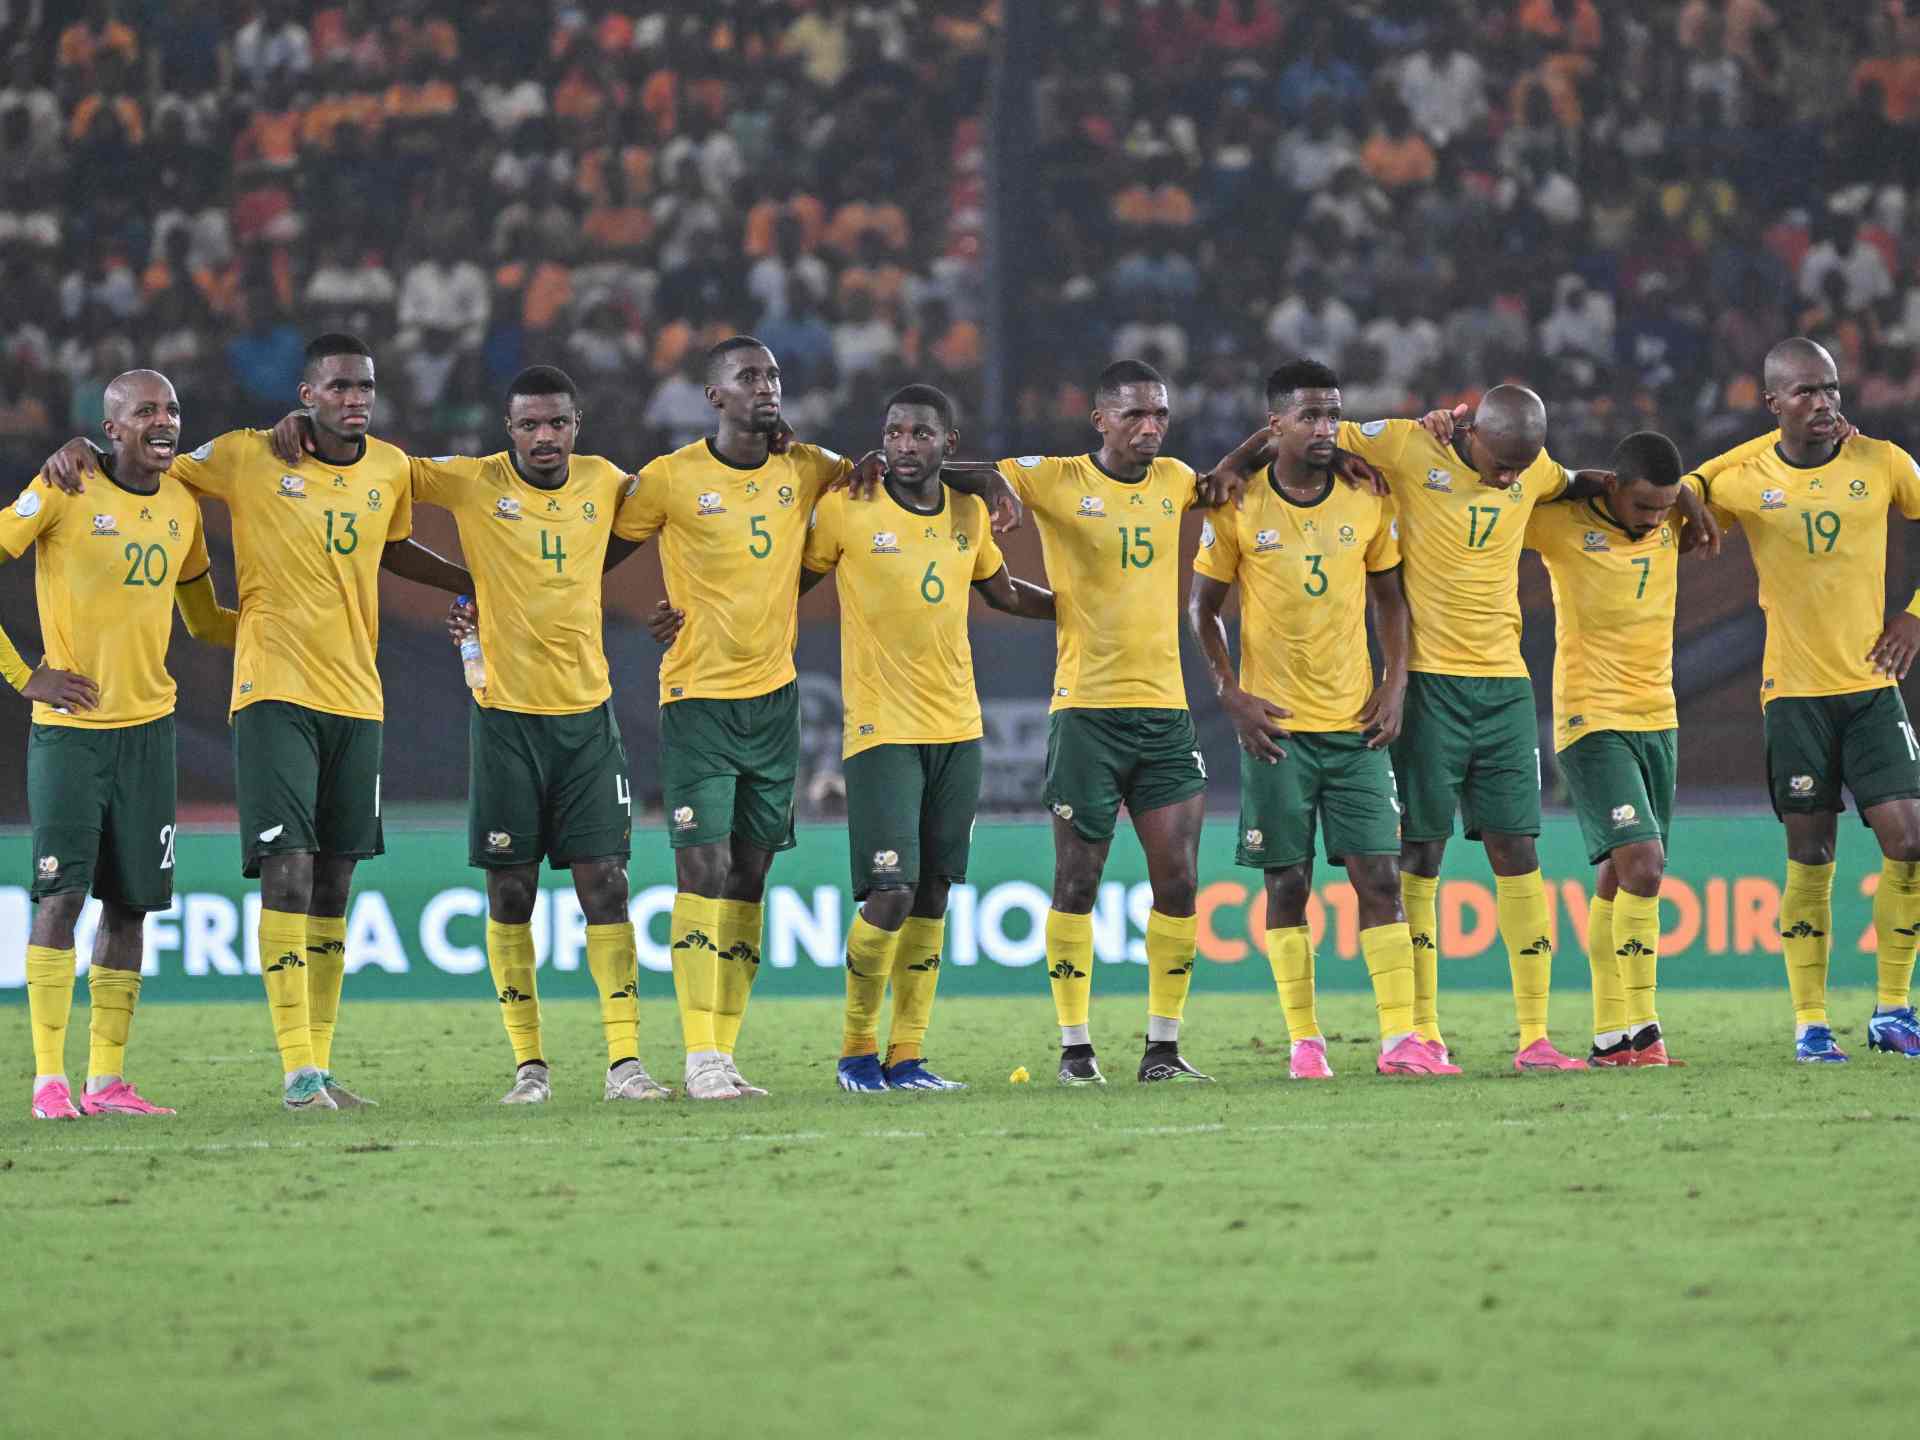 جنوب أفريقيا تهزم الكونغو الديمقراطية وتحصد برونزية كأس أفريقيا